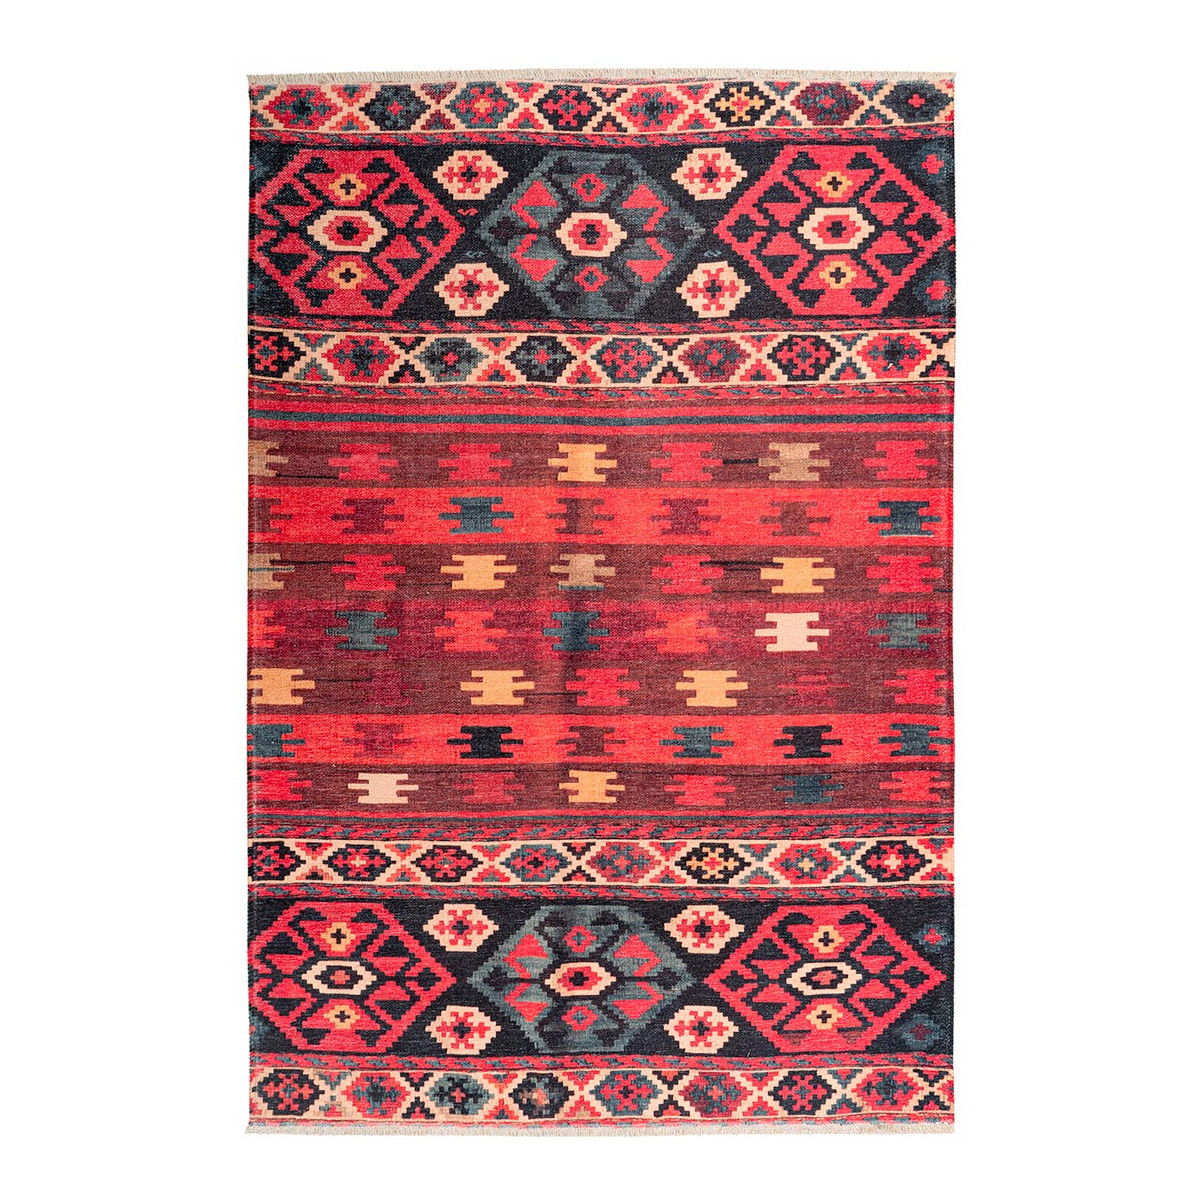 Tapis ethnique patchwork en polyester multicolore 150x230